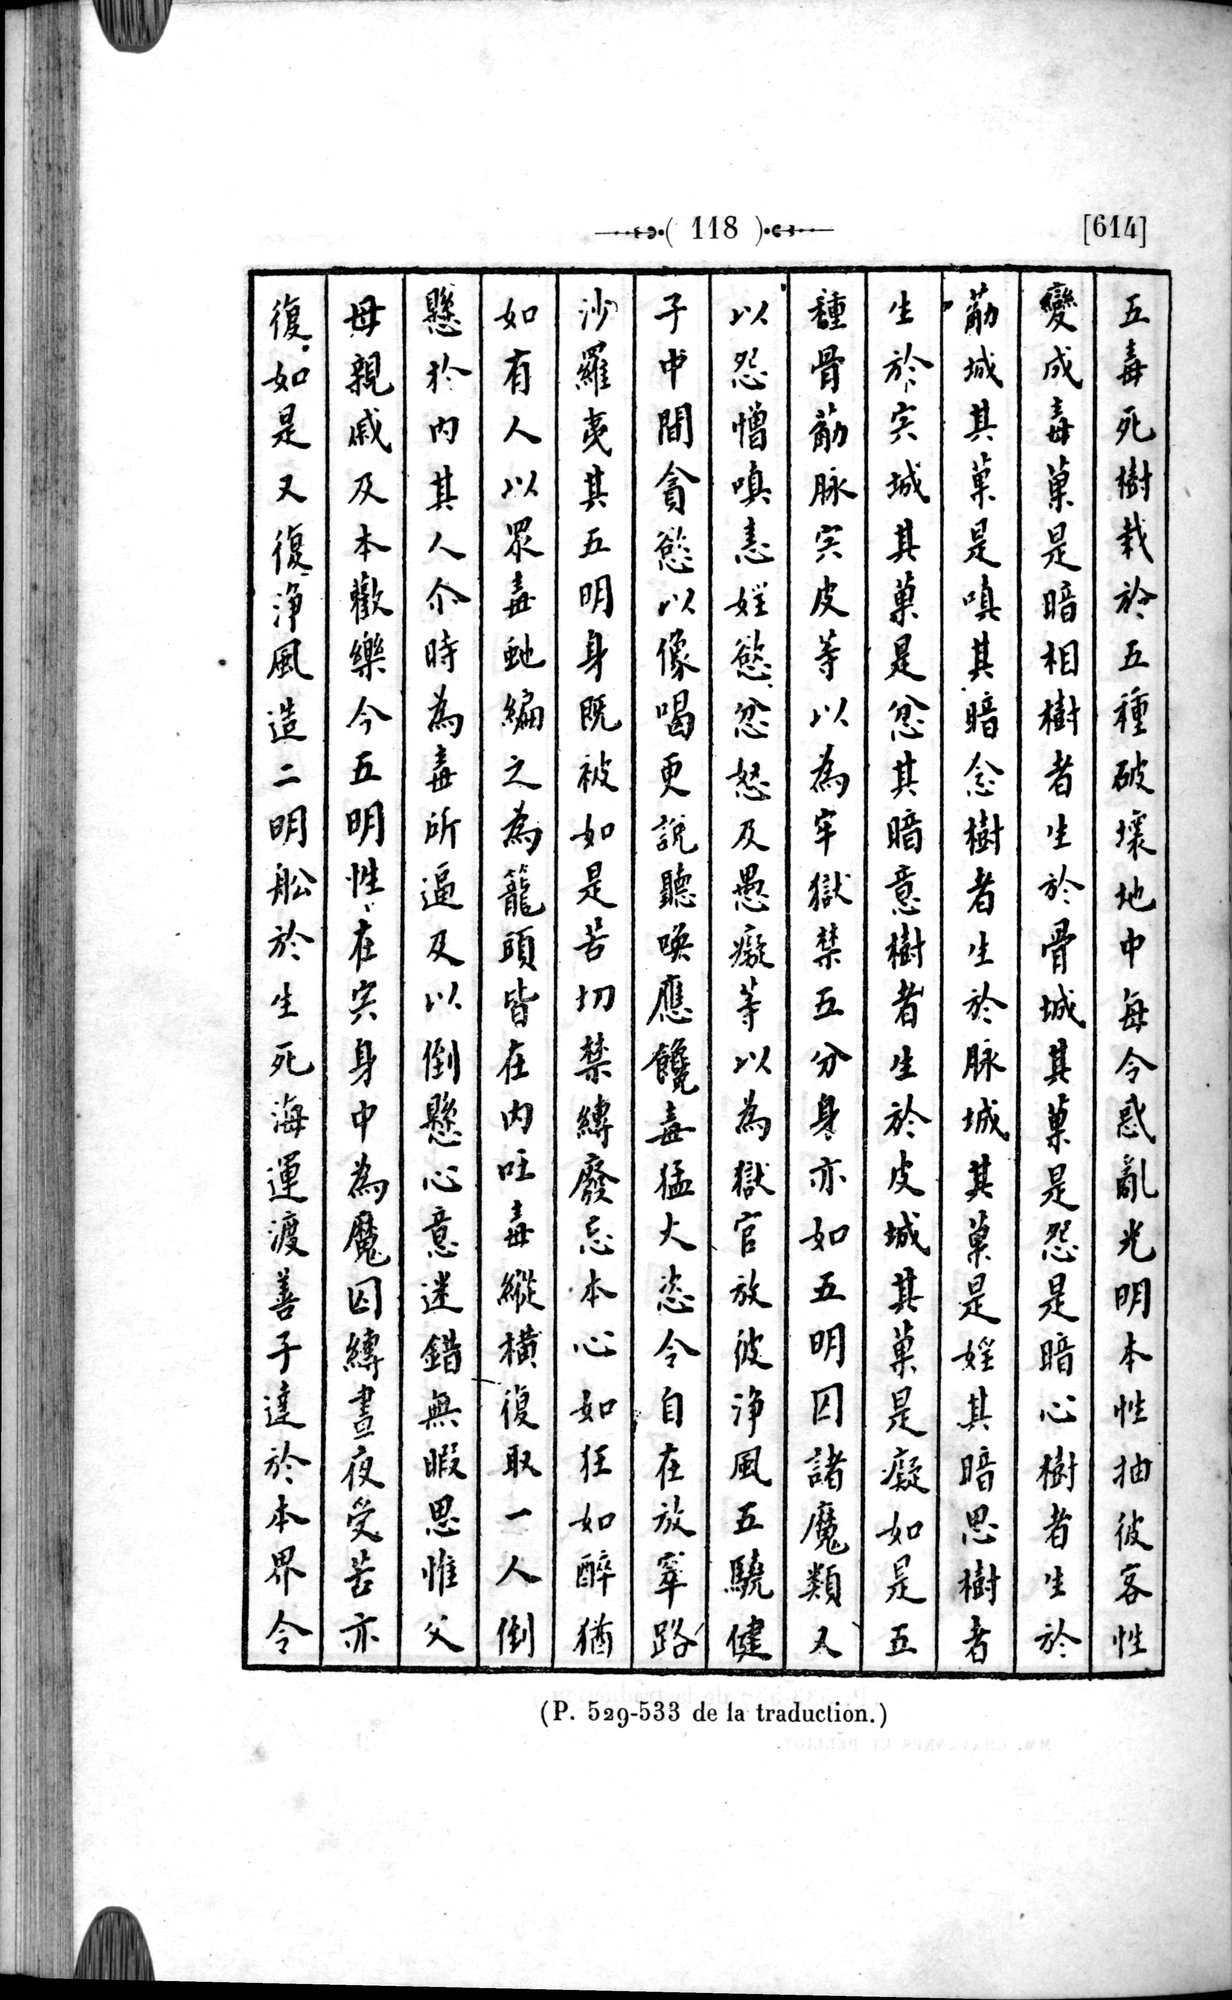 Un traité manichéen retrouvé en Chine : vol.1 / Page 128 (Grayscale High Resolution Image)